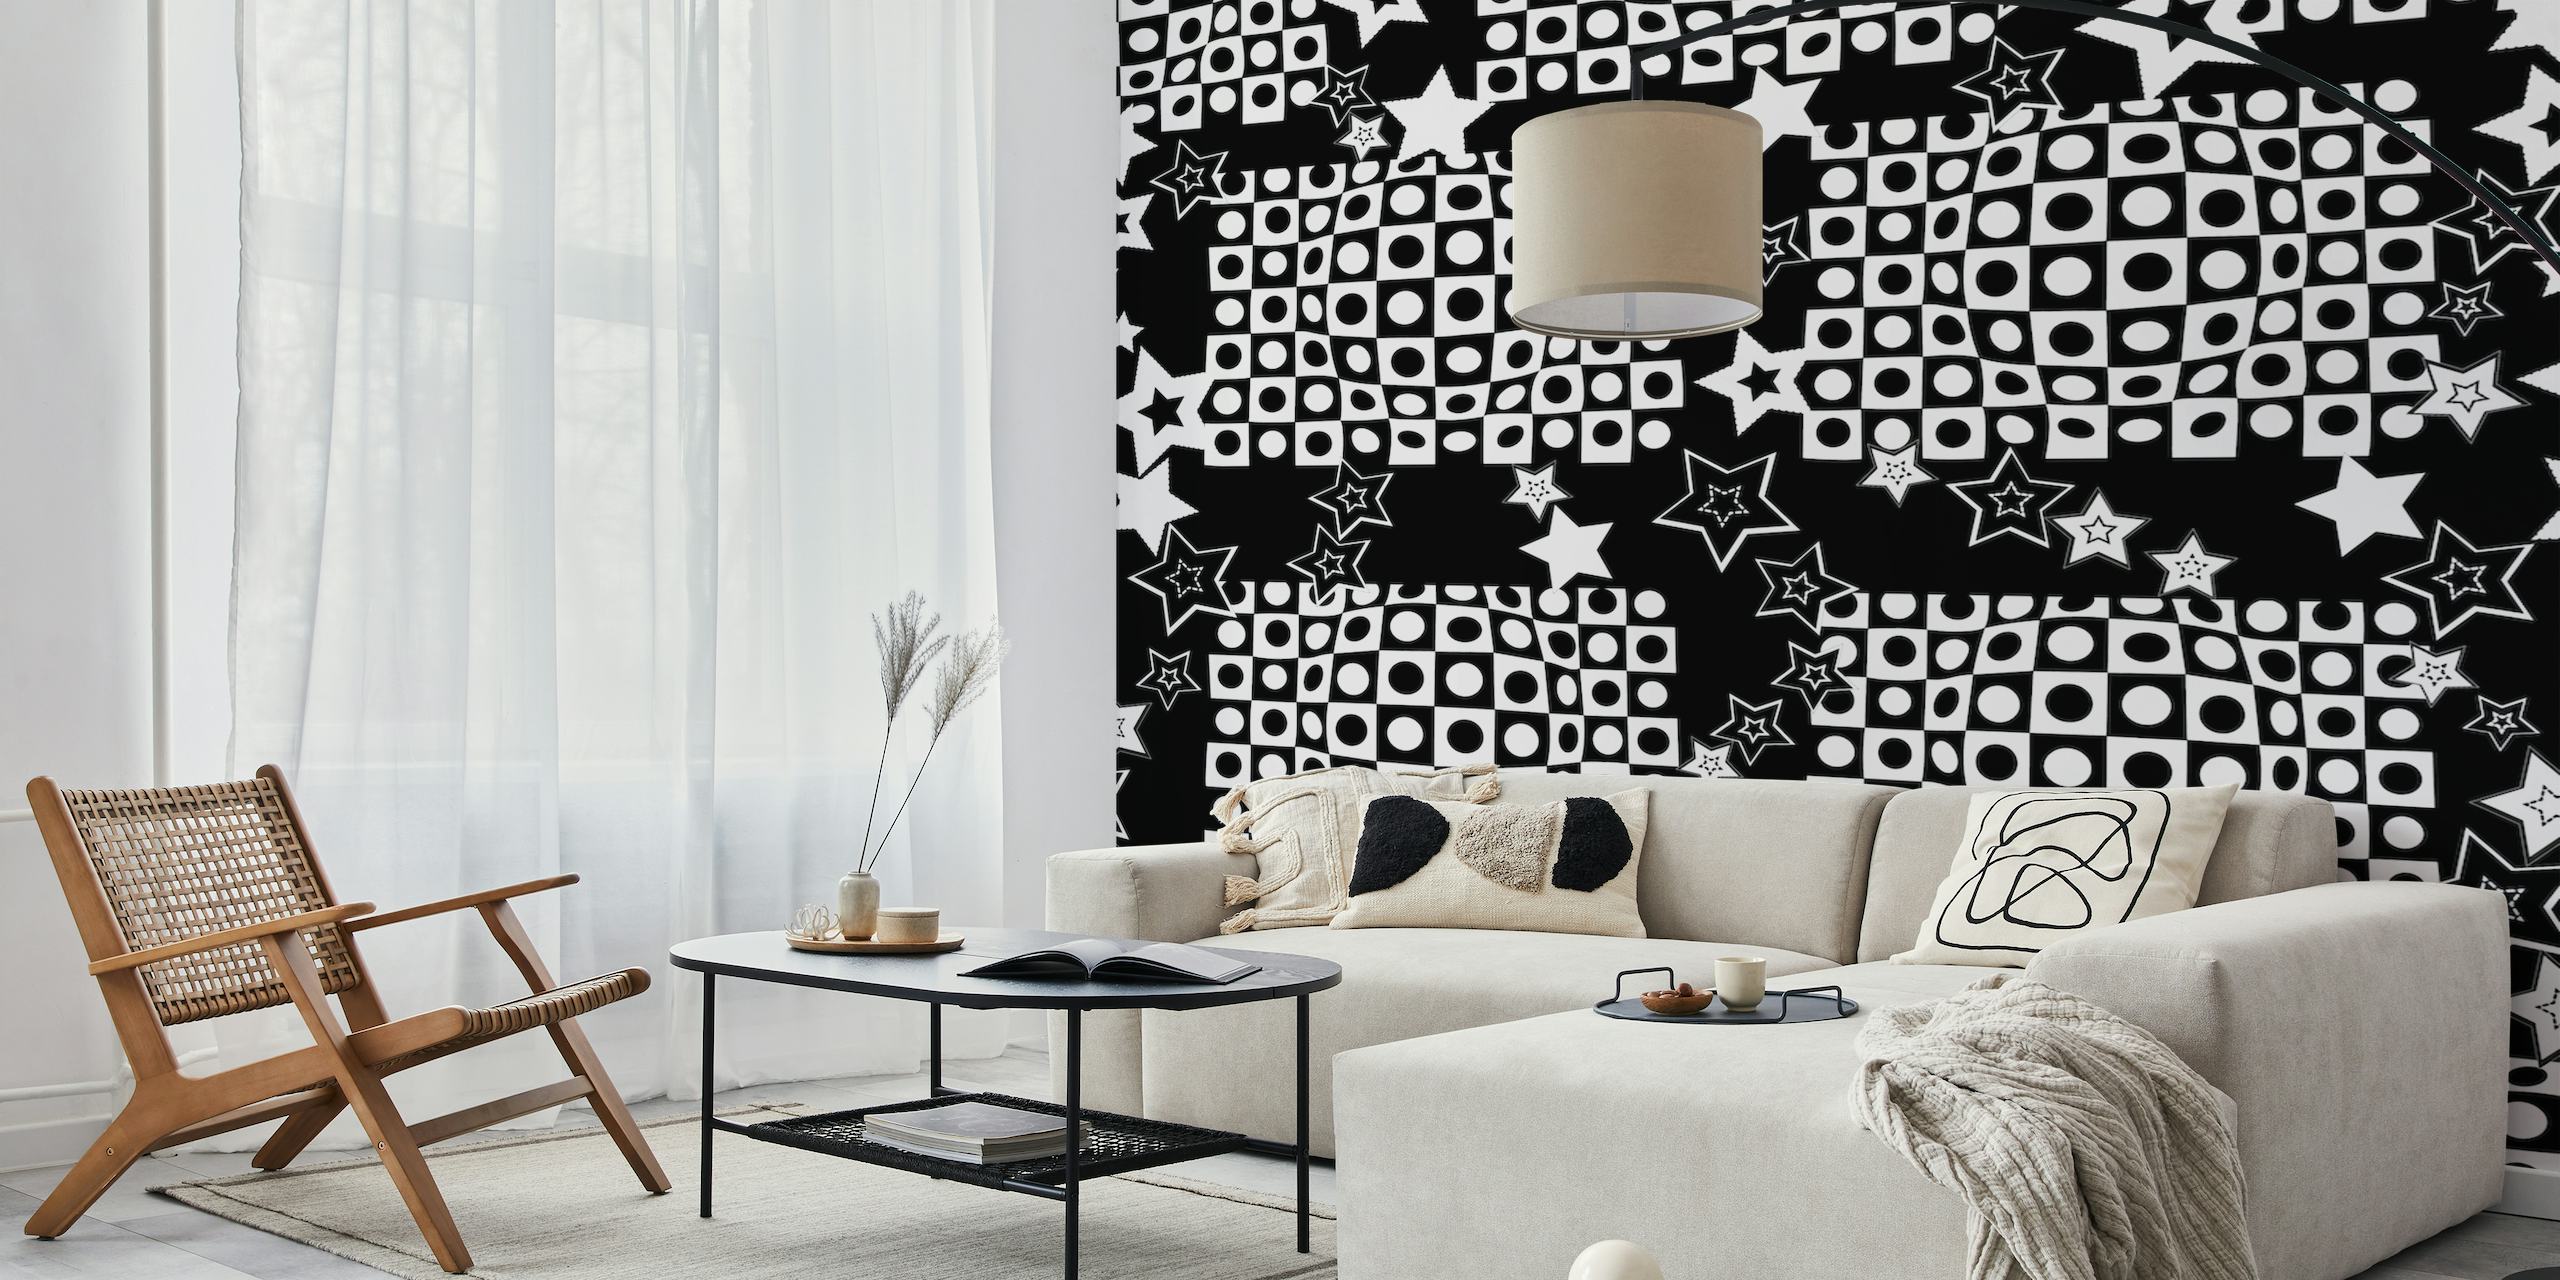 Fotomural de ilusión óptica en blanco y negro con estrellas para una decoración moderna de una habitación